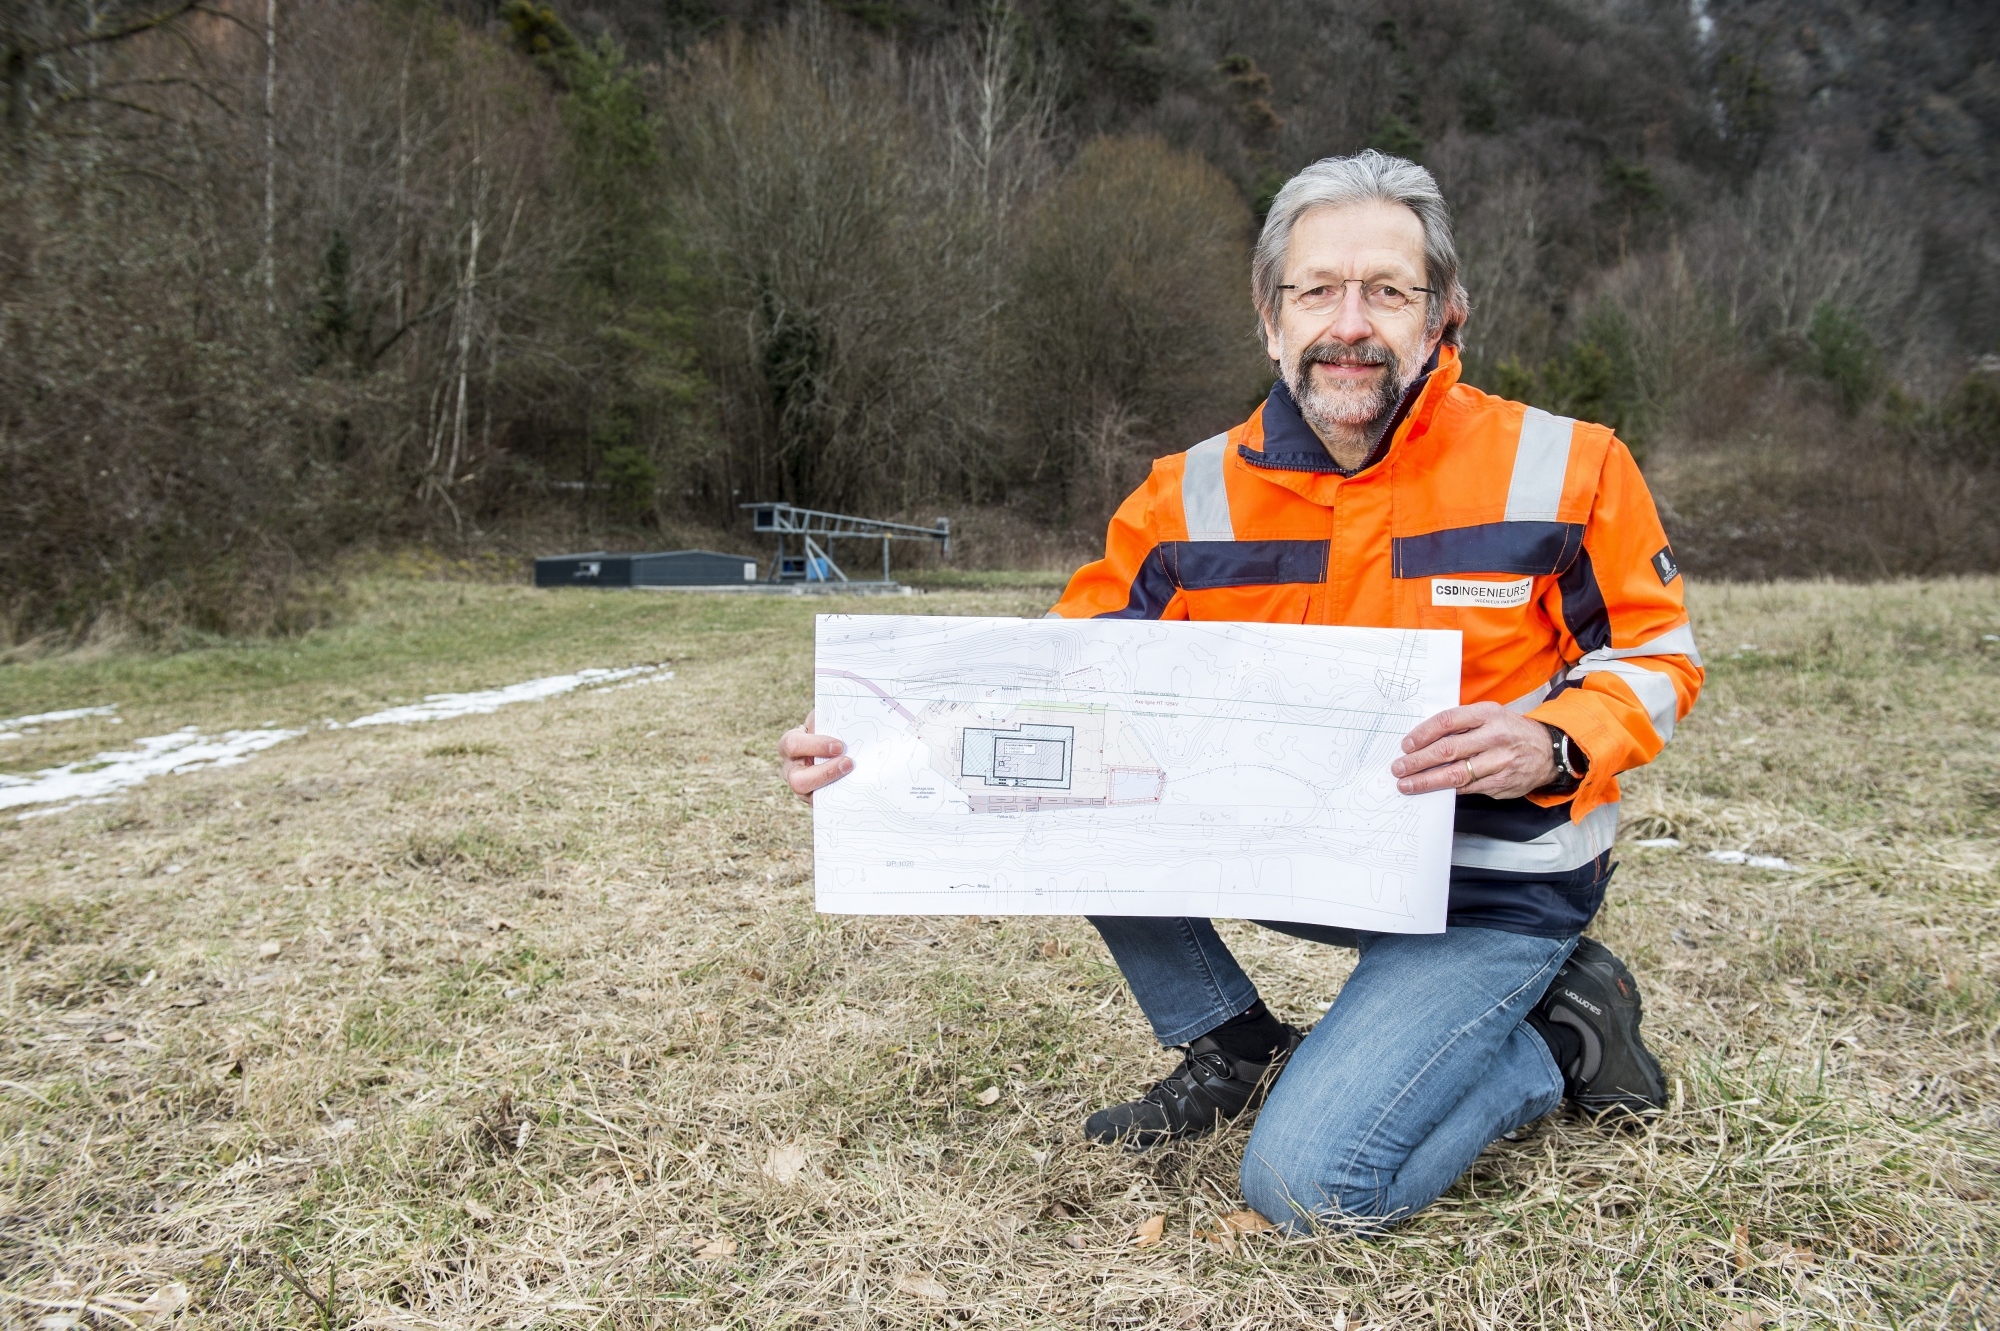  Jean-Marc Lavanchy, hydrogéologue-expert, se veut rassurant sur le site de la mise à l'enquête du projet de géothermie à Lavey-les-Bains.